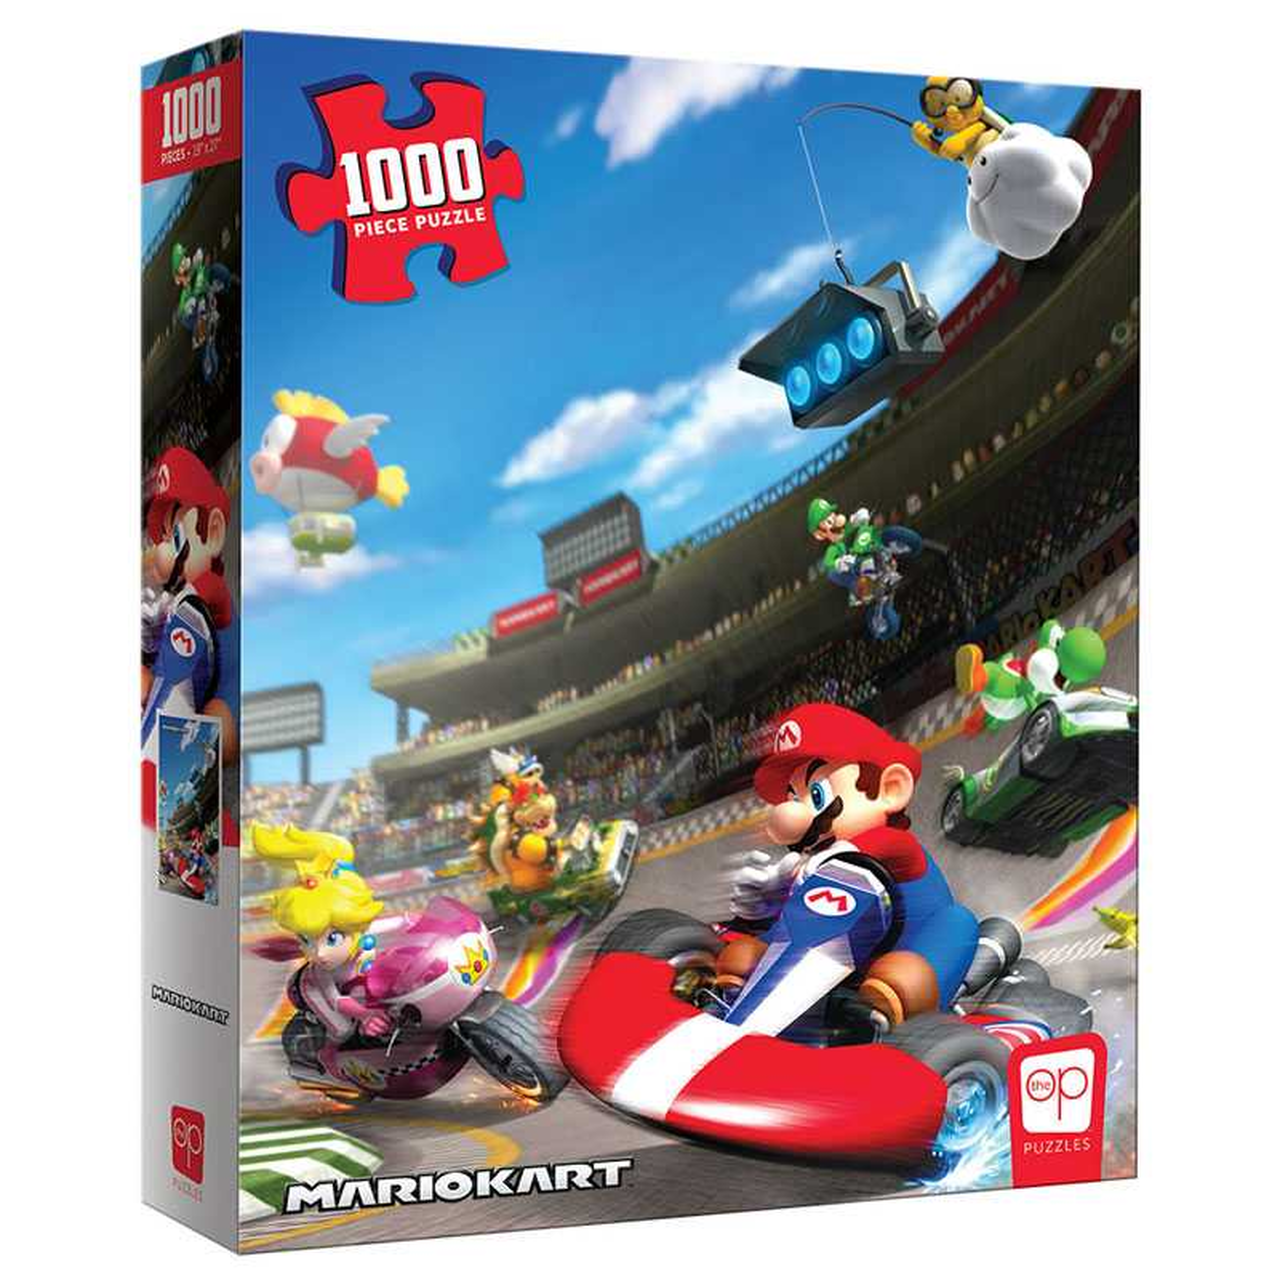 Usaopoly PZ005-678 Mario Kart Puzzel 1000 stukjes, verschillende kleuren